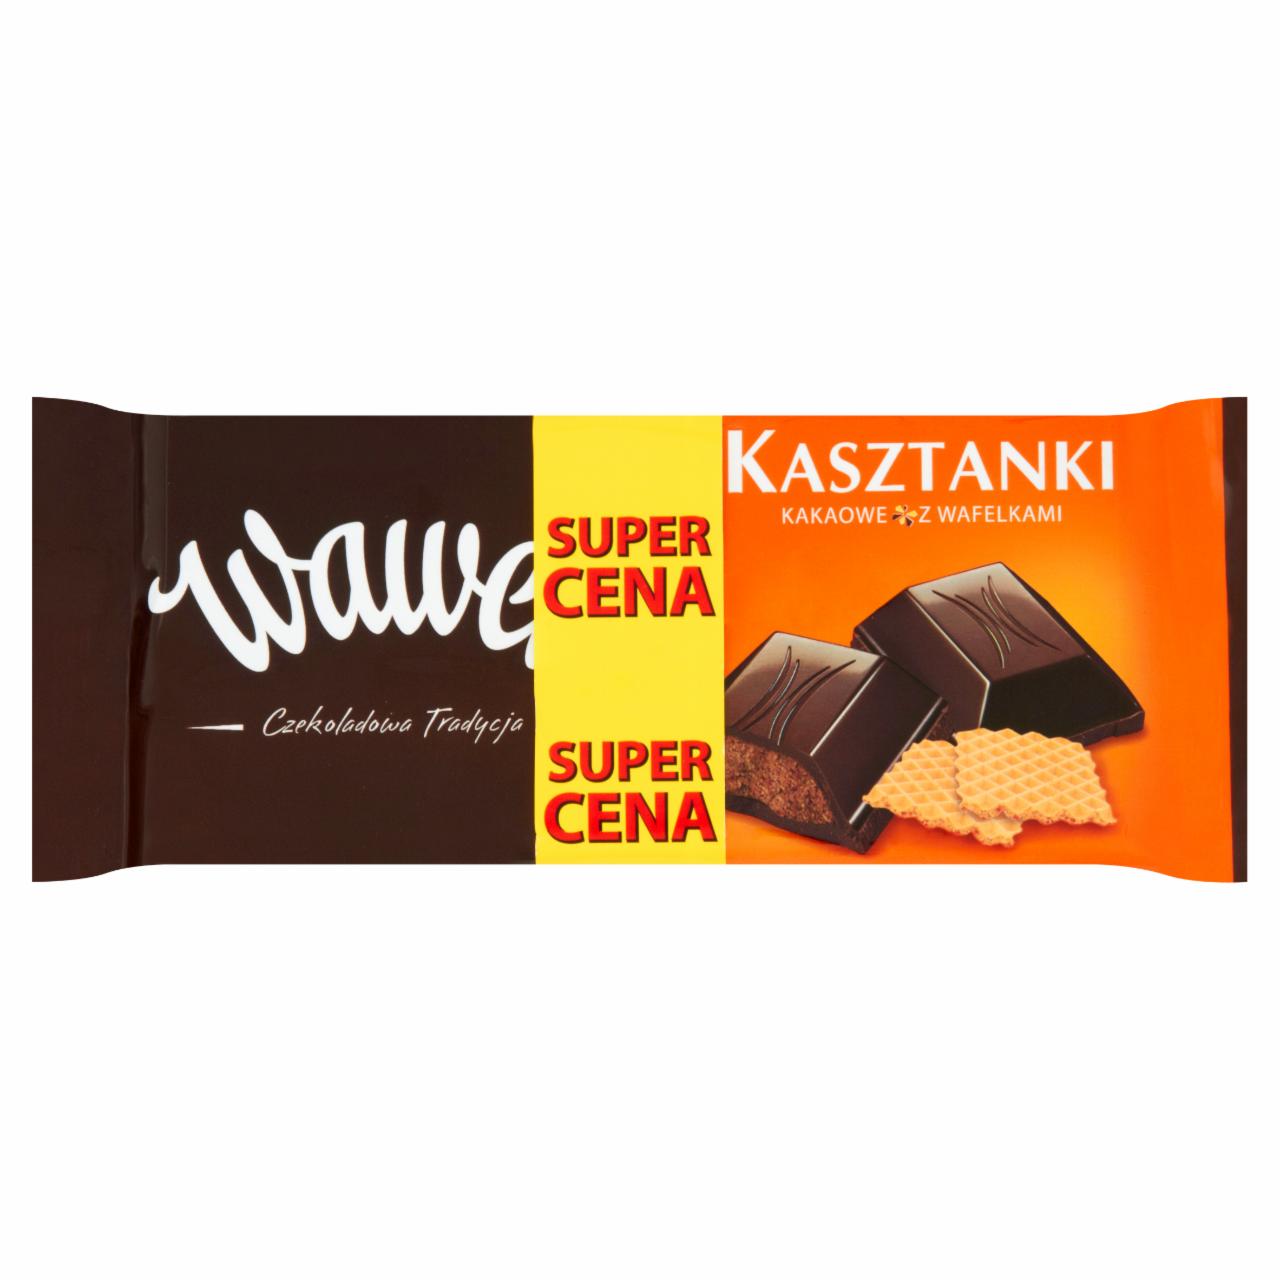 Zdjęcia - Wawel Kasztanki kakaowe z wafelkami Czekolada nadziewana 2 x 100 g